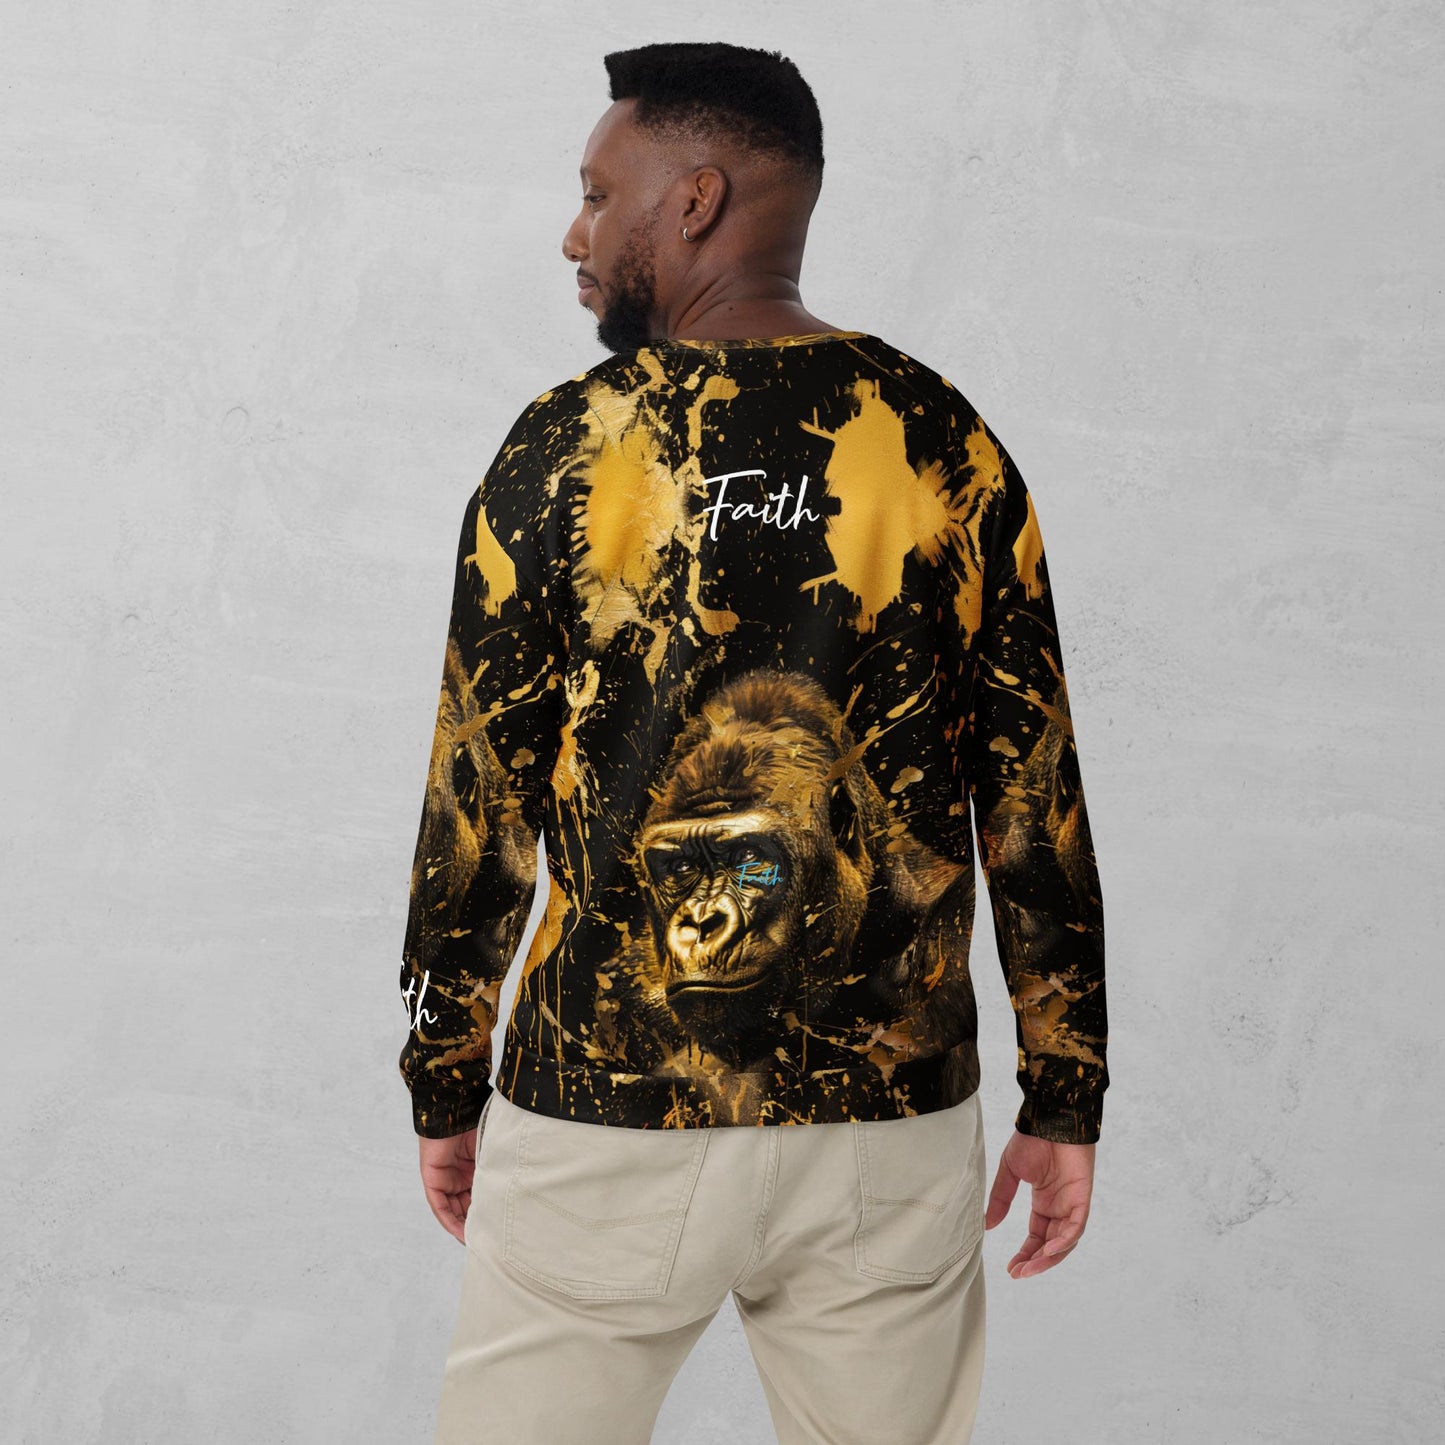 J.A Faith Gold Gorilla- Men's Sweatshirt